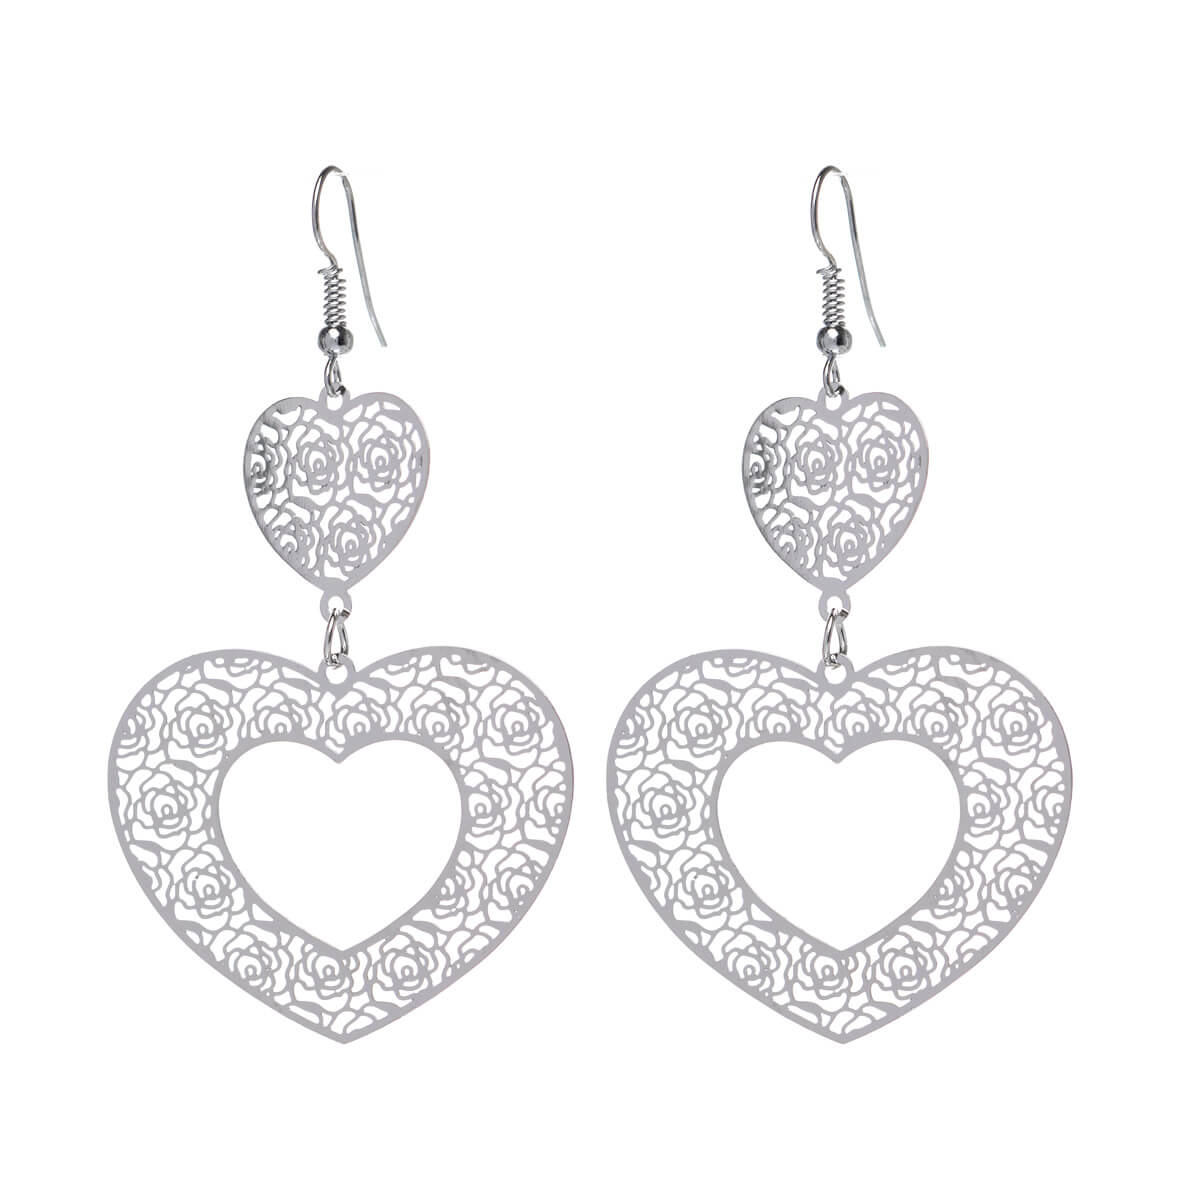 Patterned heart earrings